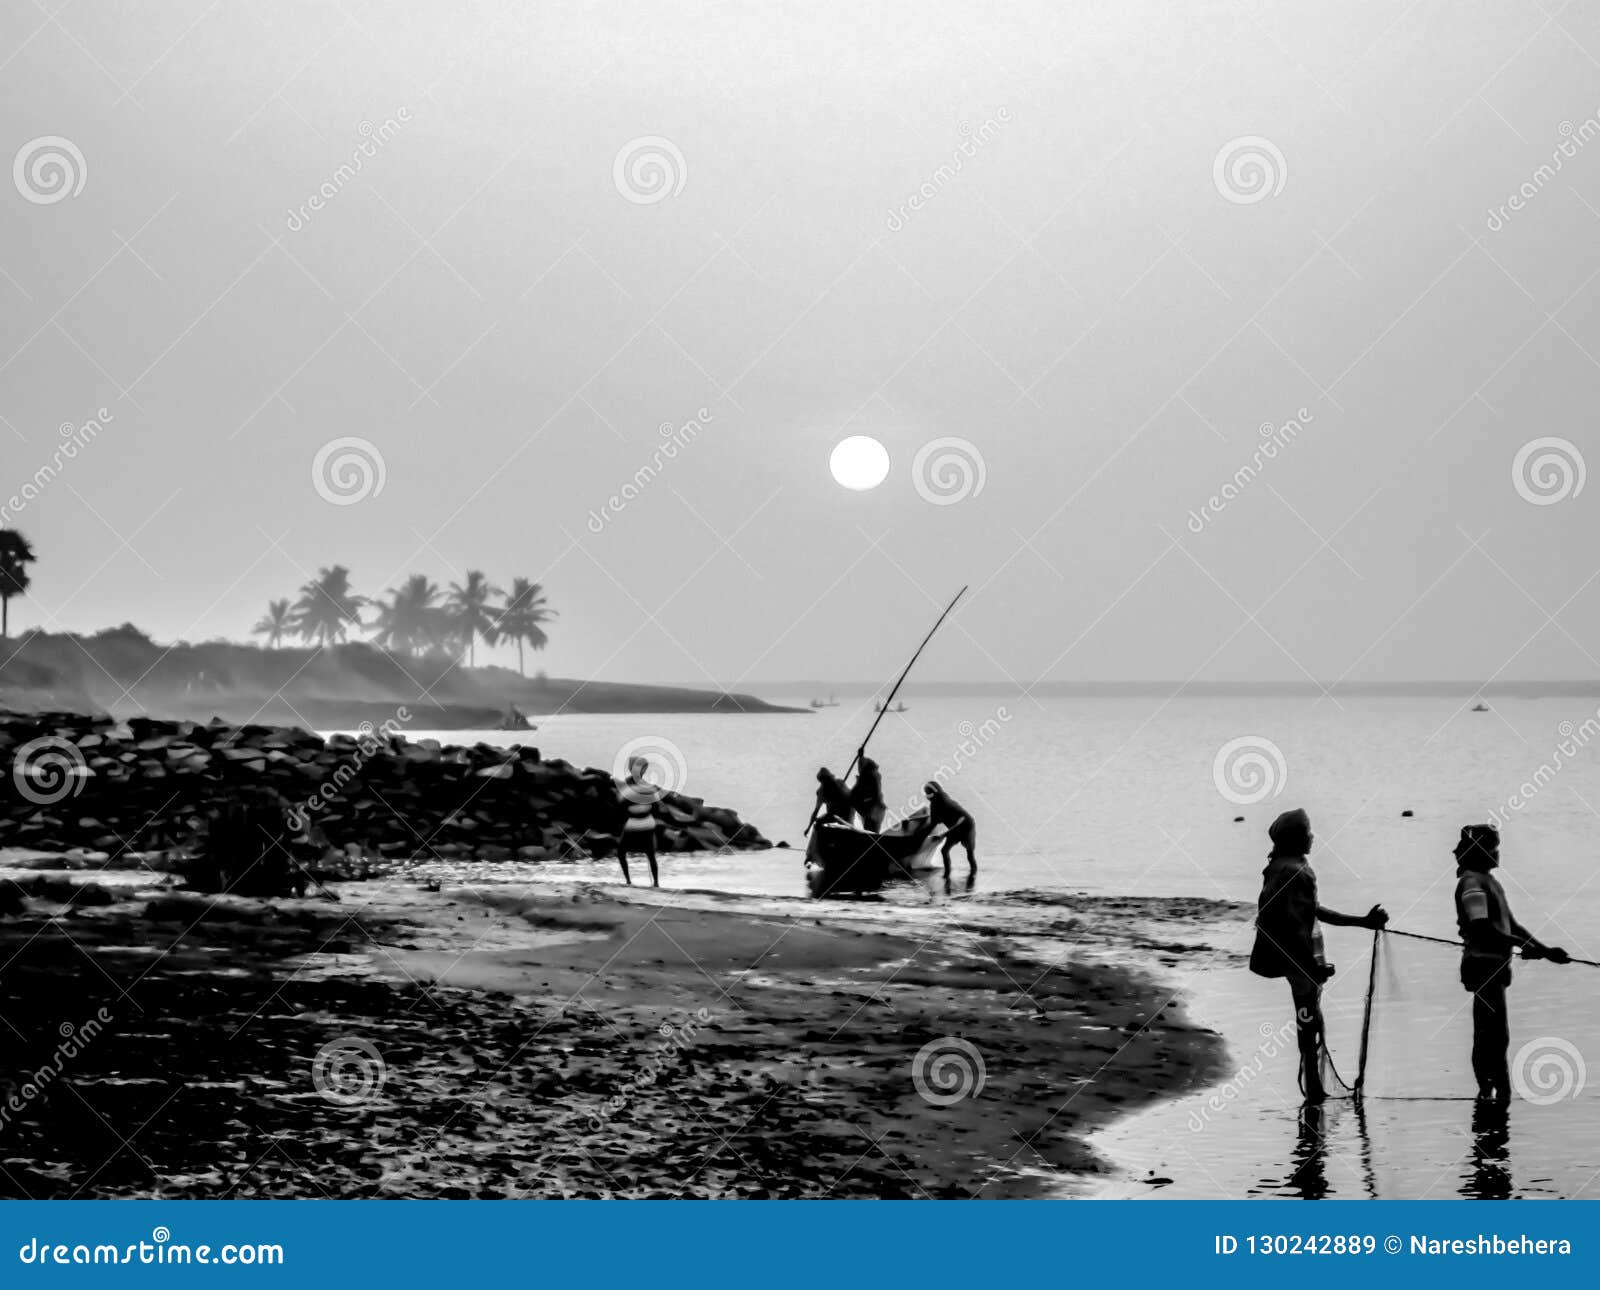 Opinião da paisagem do lago do chilika durante o alvorecer. A opinião da paisagem do lago Chilika, Odisha, Índia é muito romântica e agradável Aqui os pescadores estão retornando do esporte de barco e estão pescando no alvorecer/por do sol